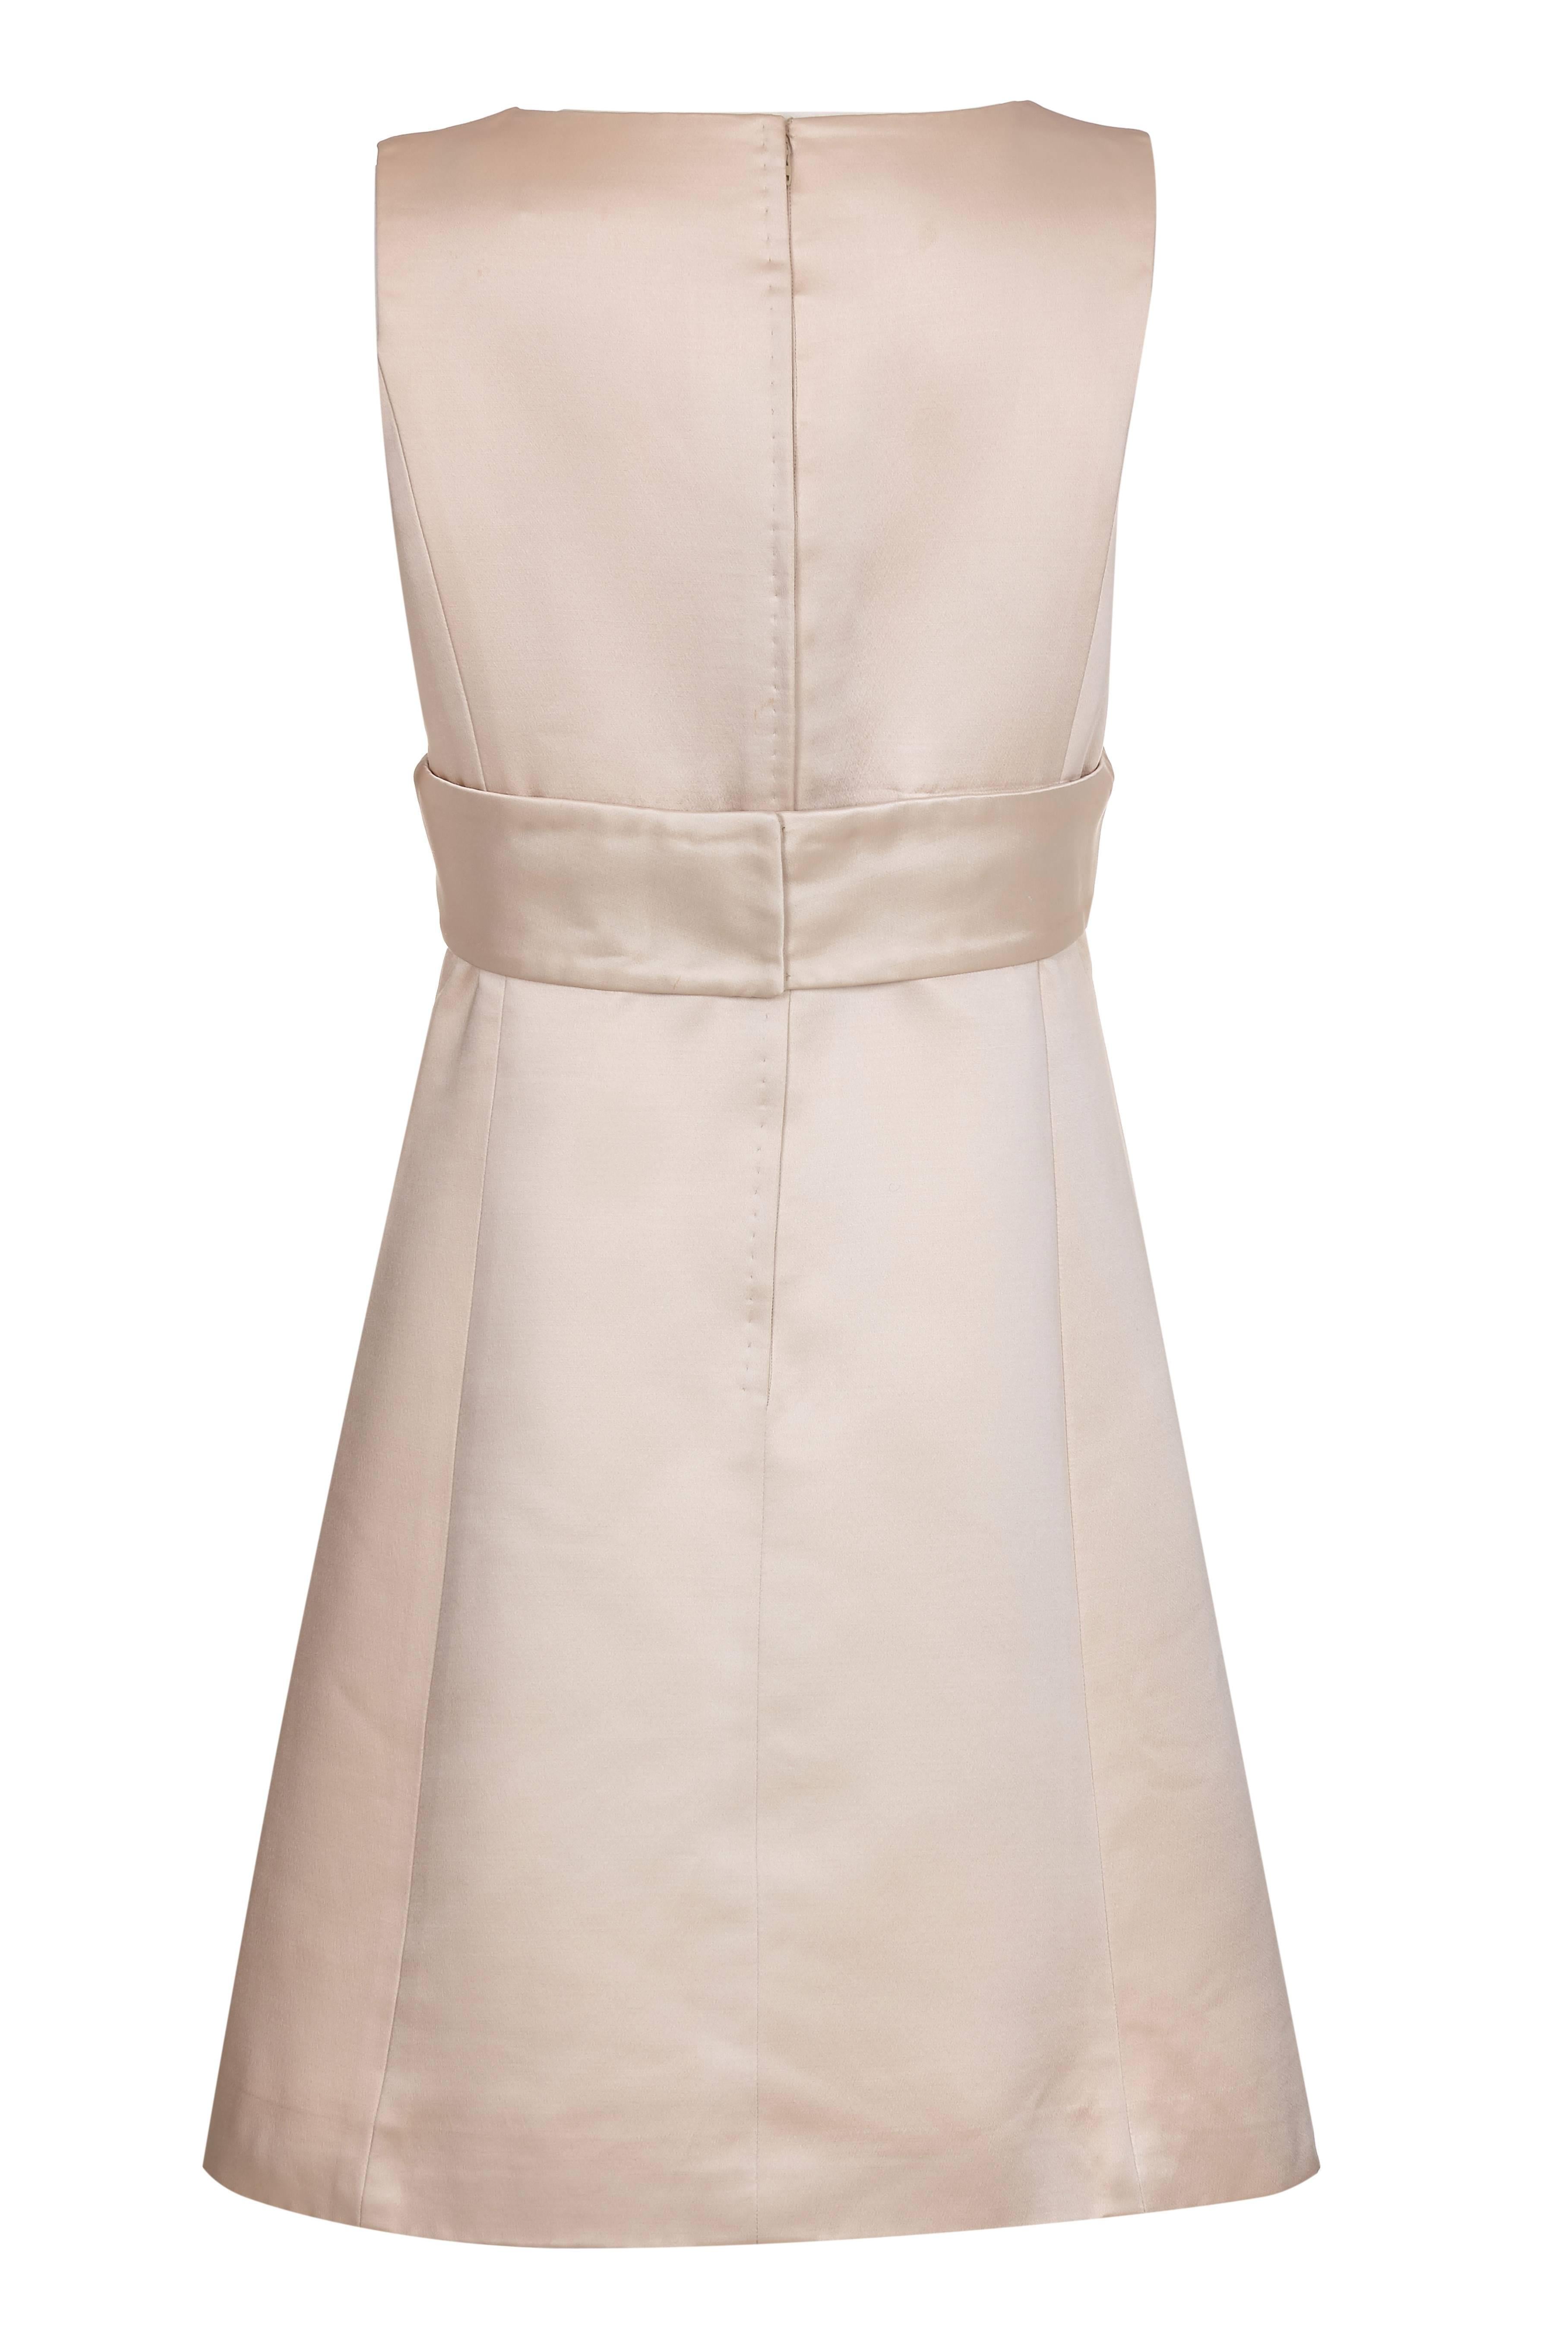 Cette robe classique et chic en satin de soie crème des années 1960 du prestigieux grand magasin I. Magnin & Co de San Francisco est d'une qualité exceptionnelle.  L'étiquette du créateur ne figure plus sur la pièce, mais il devait s'agir de l'un